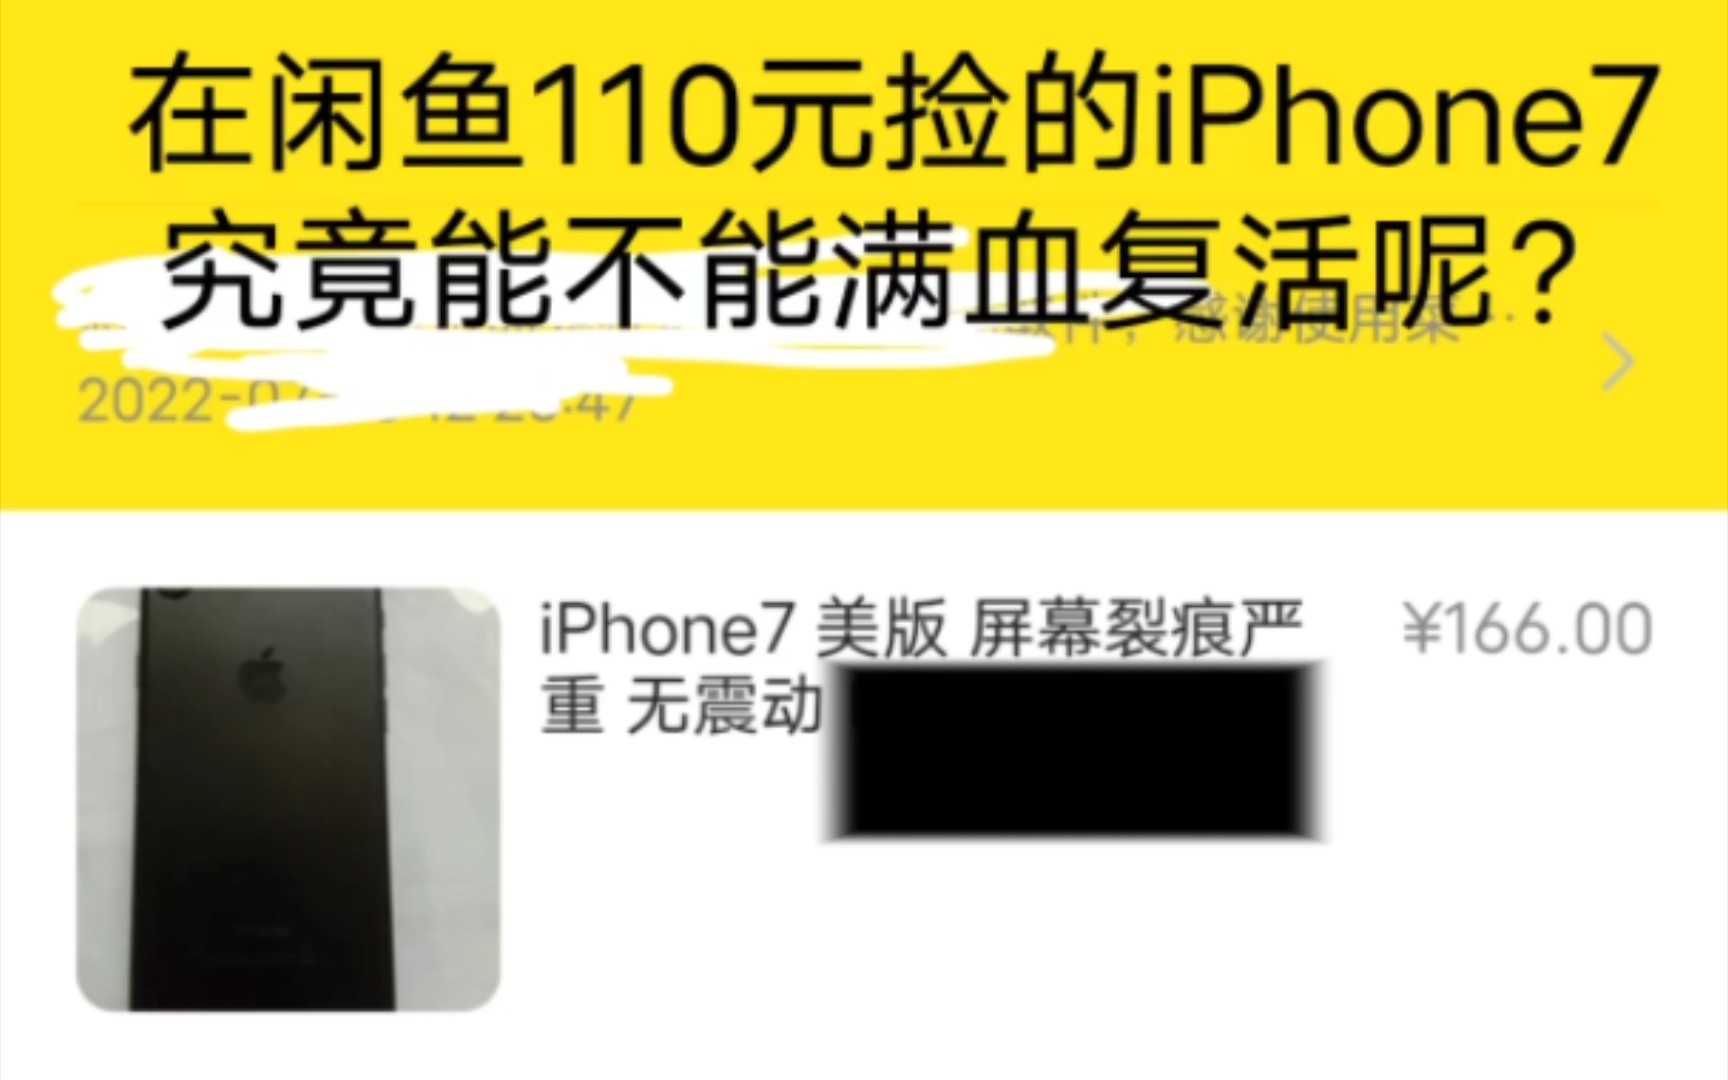 在闲鱼110元捡漏的iPhone 7，究竟能不能满血复活呢？